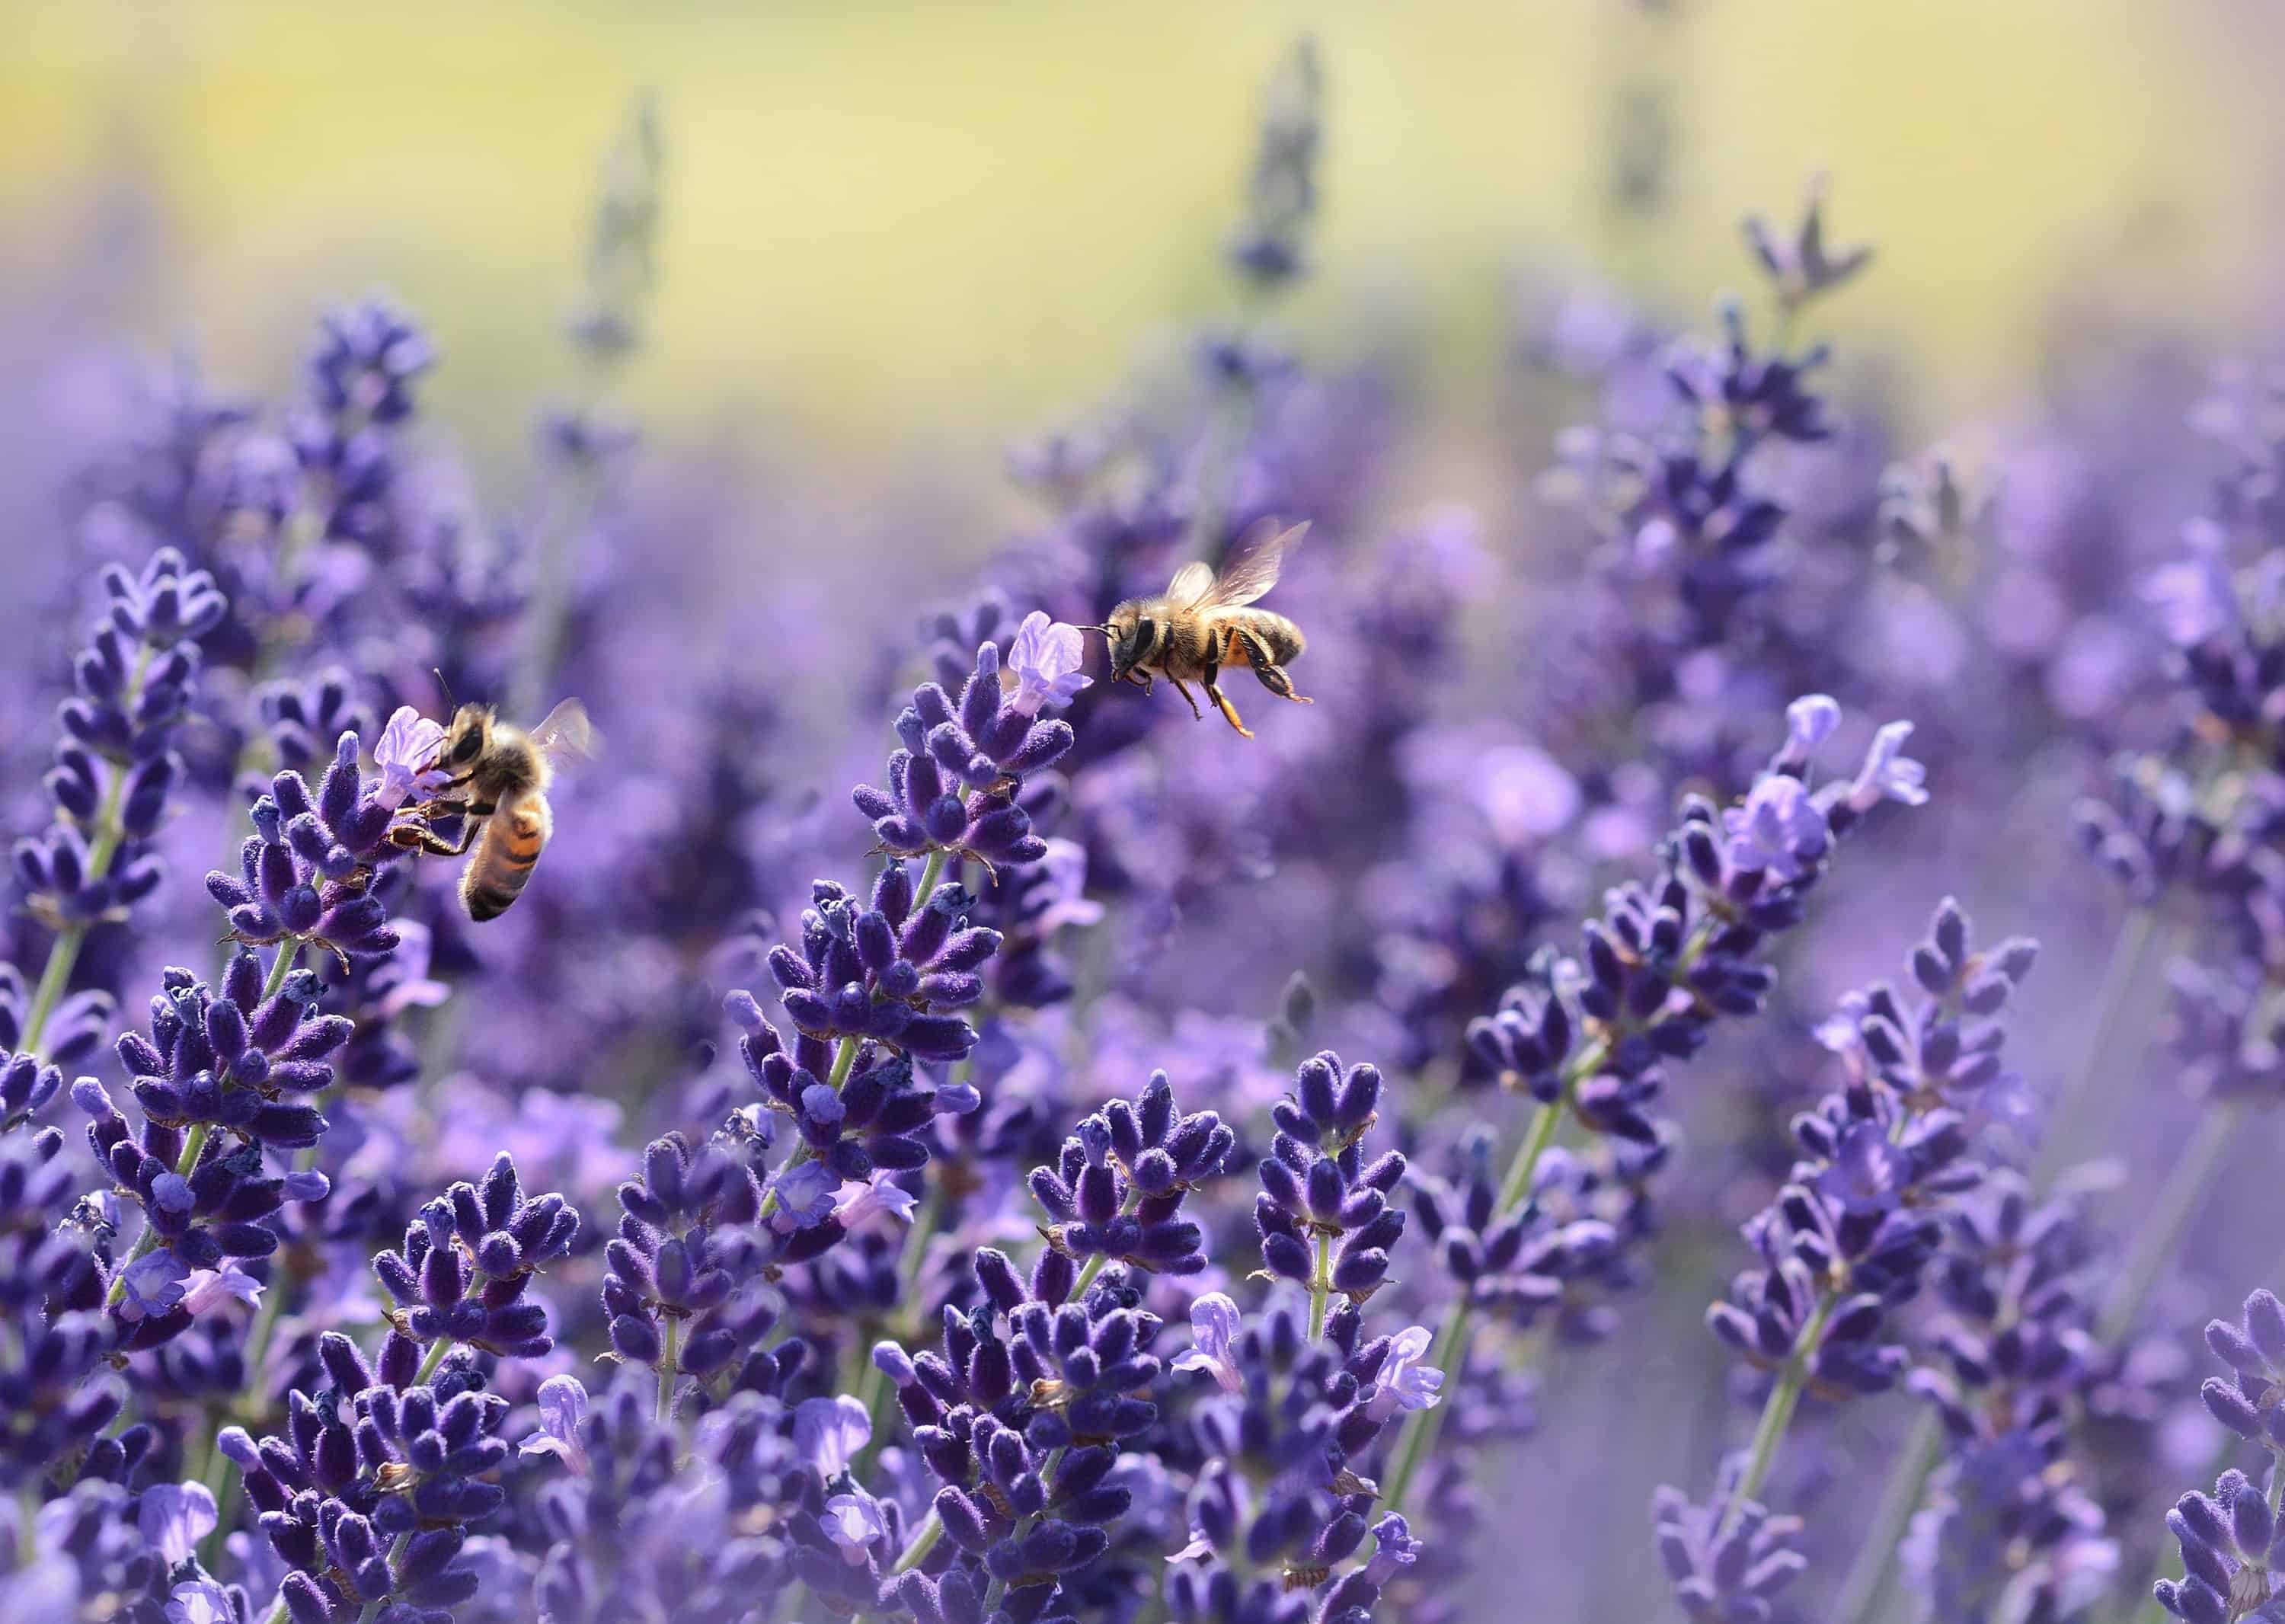 Bees (image: Pexels)